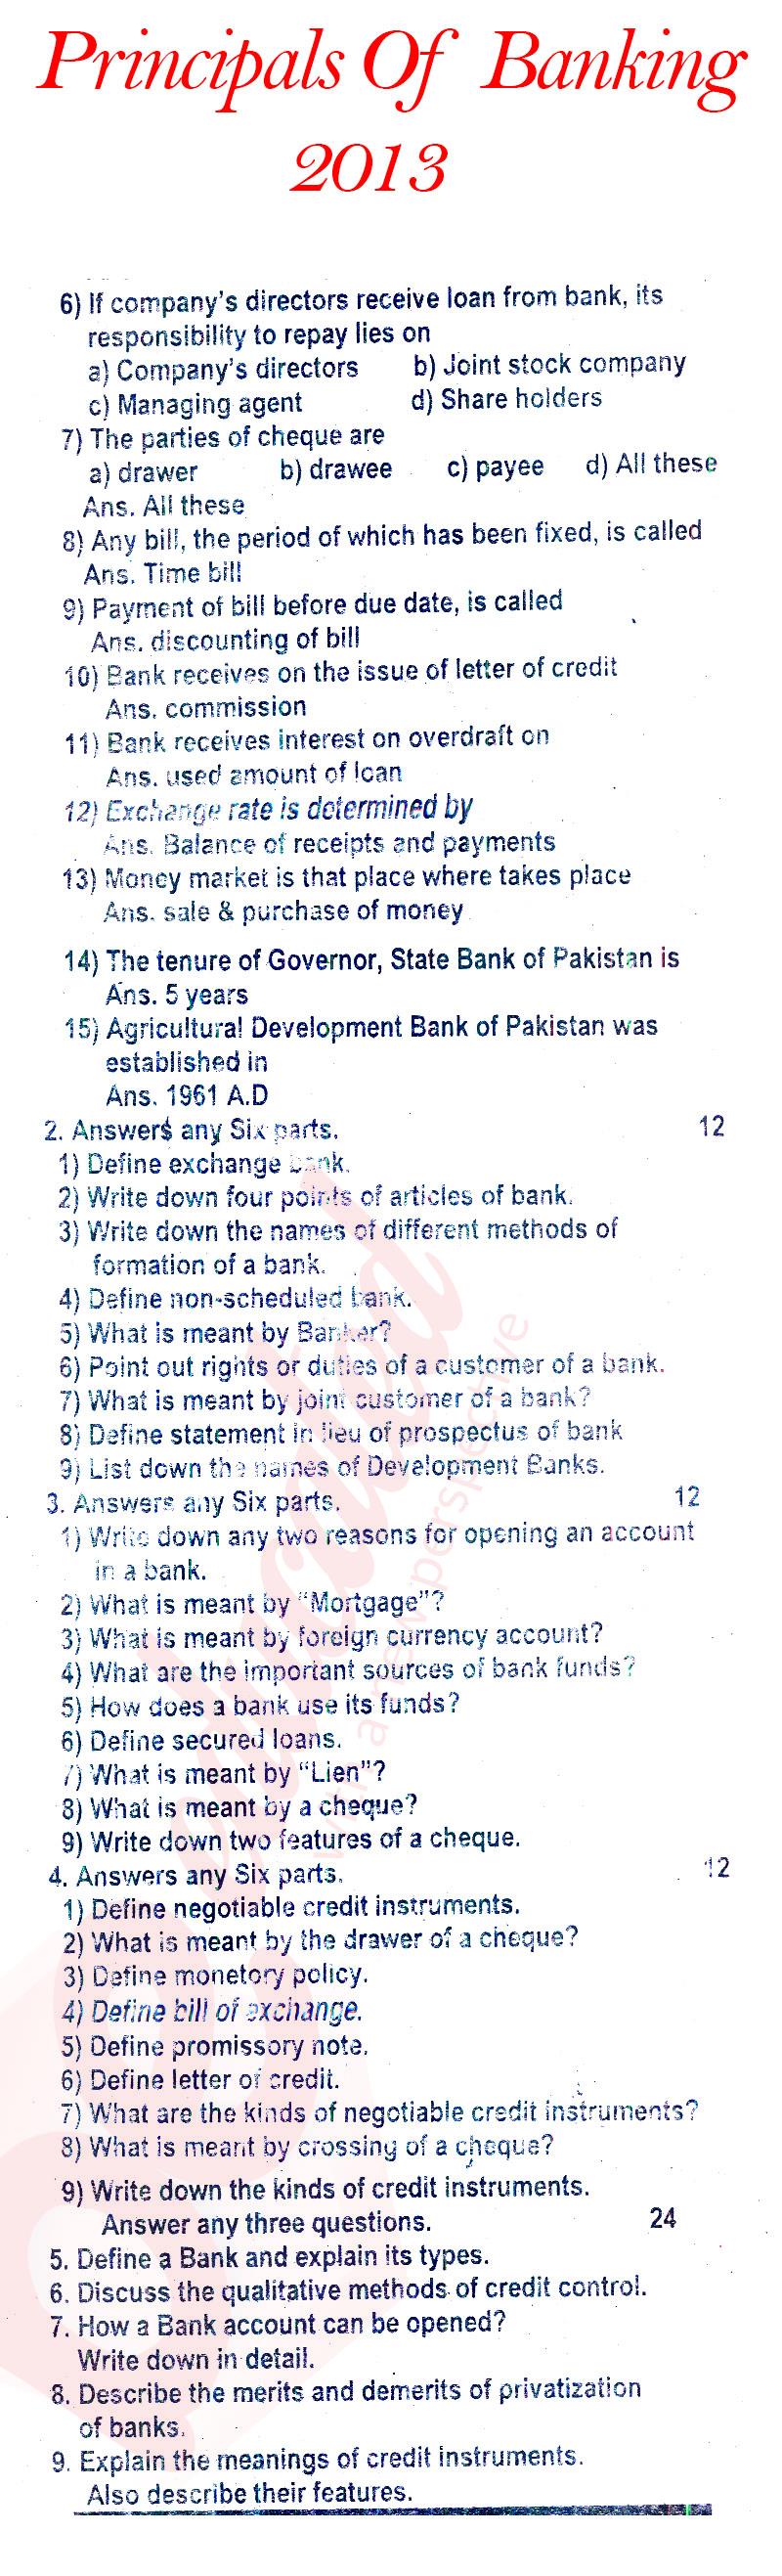 Principles of Banking ICOM Part 2 Past Paper Group 1 BISE Rawalpindi 2013